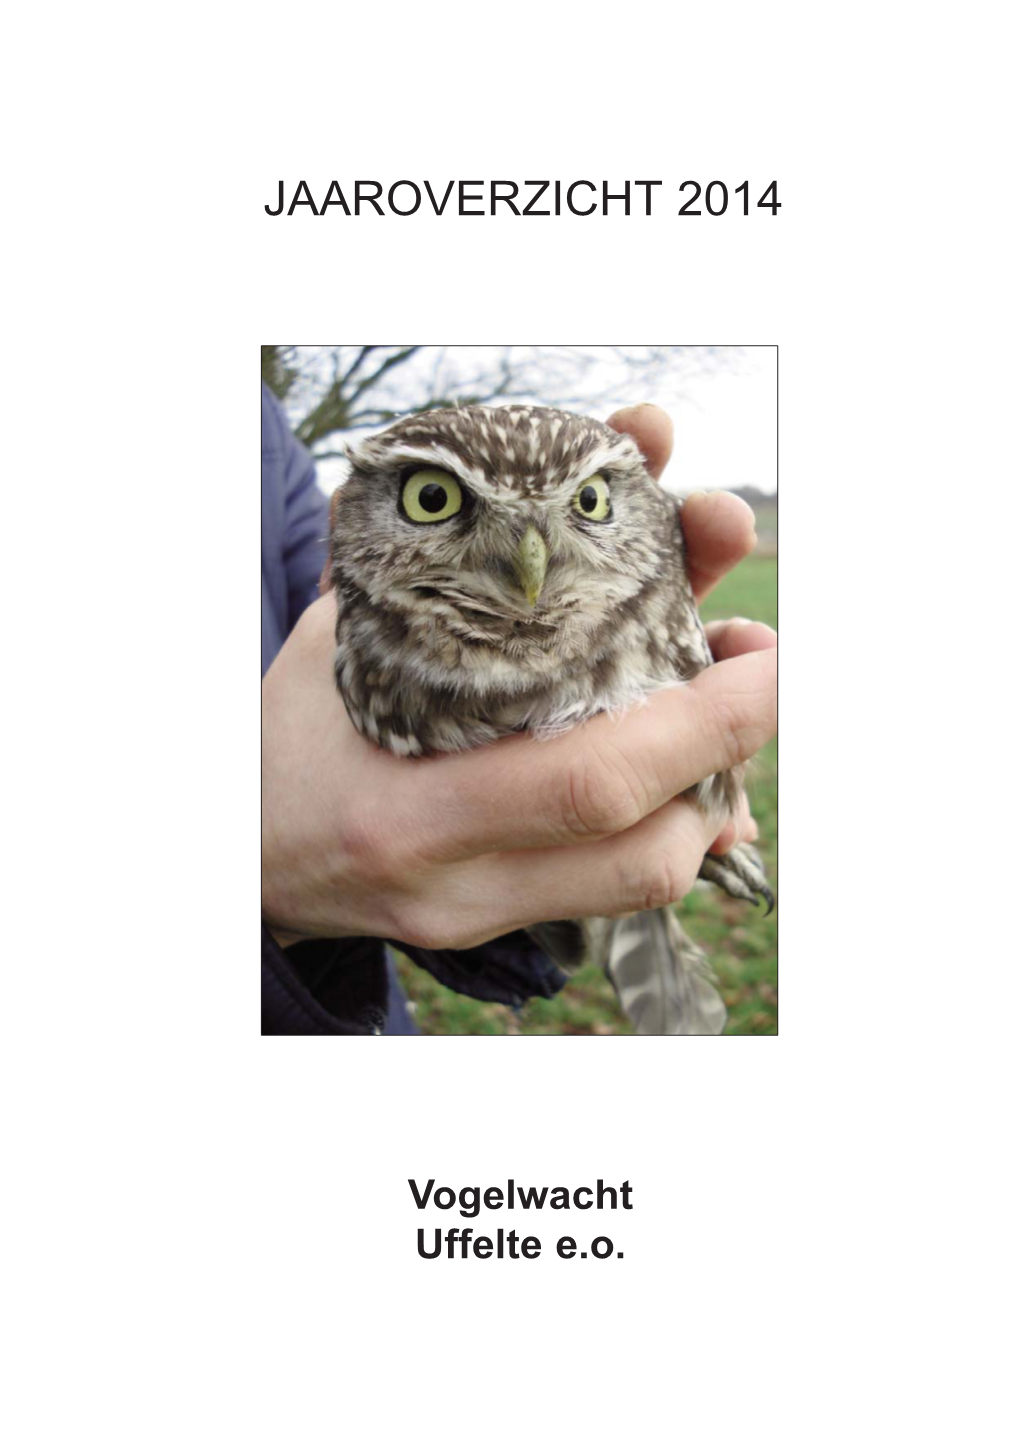 Vogelwacht Uffelte Jaarverslag 2014